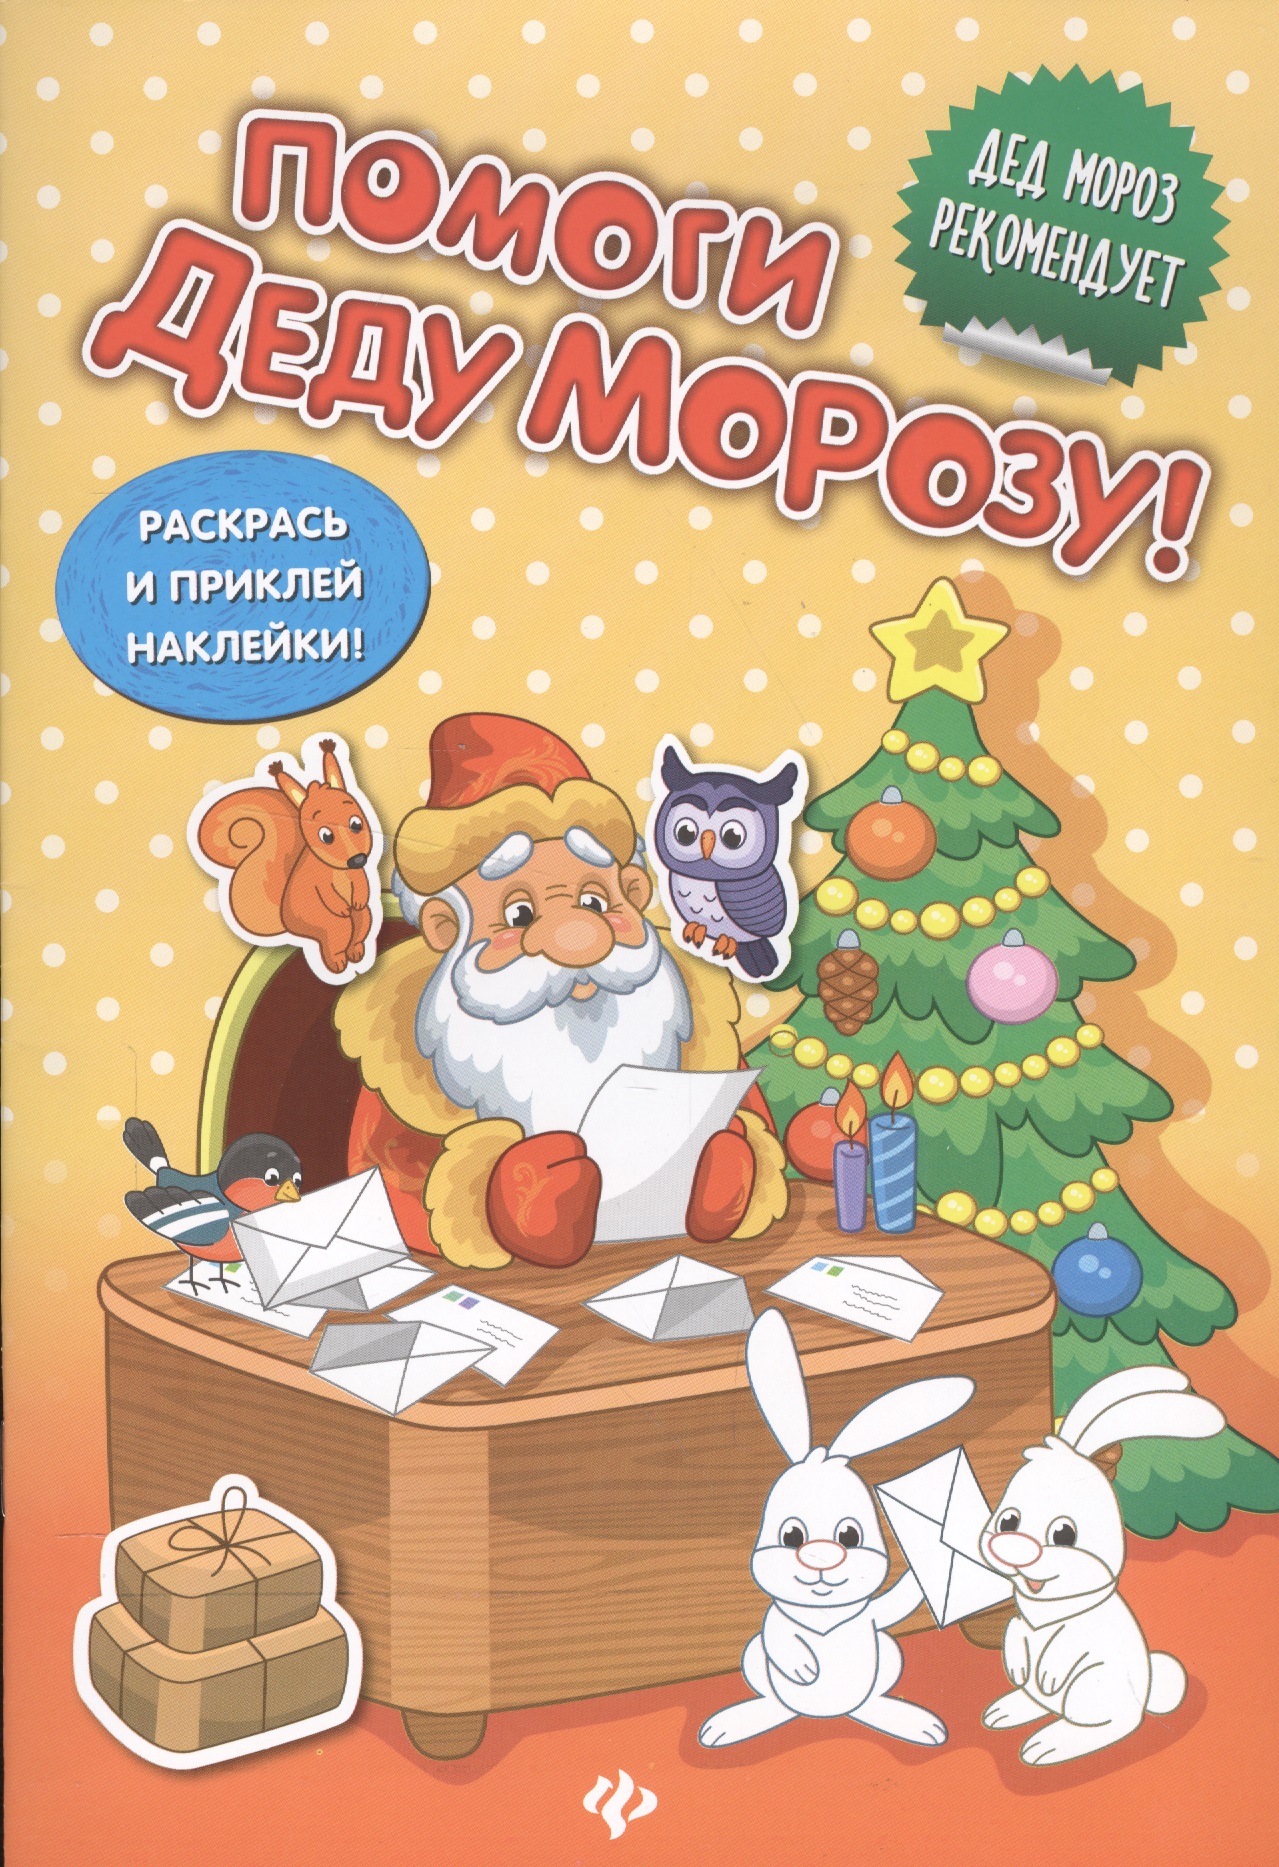 Помоги Деду Морозу!:развивающая книжка с наклейкам